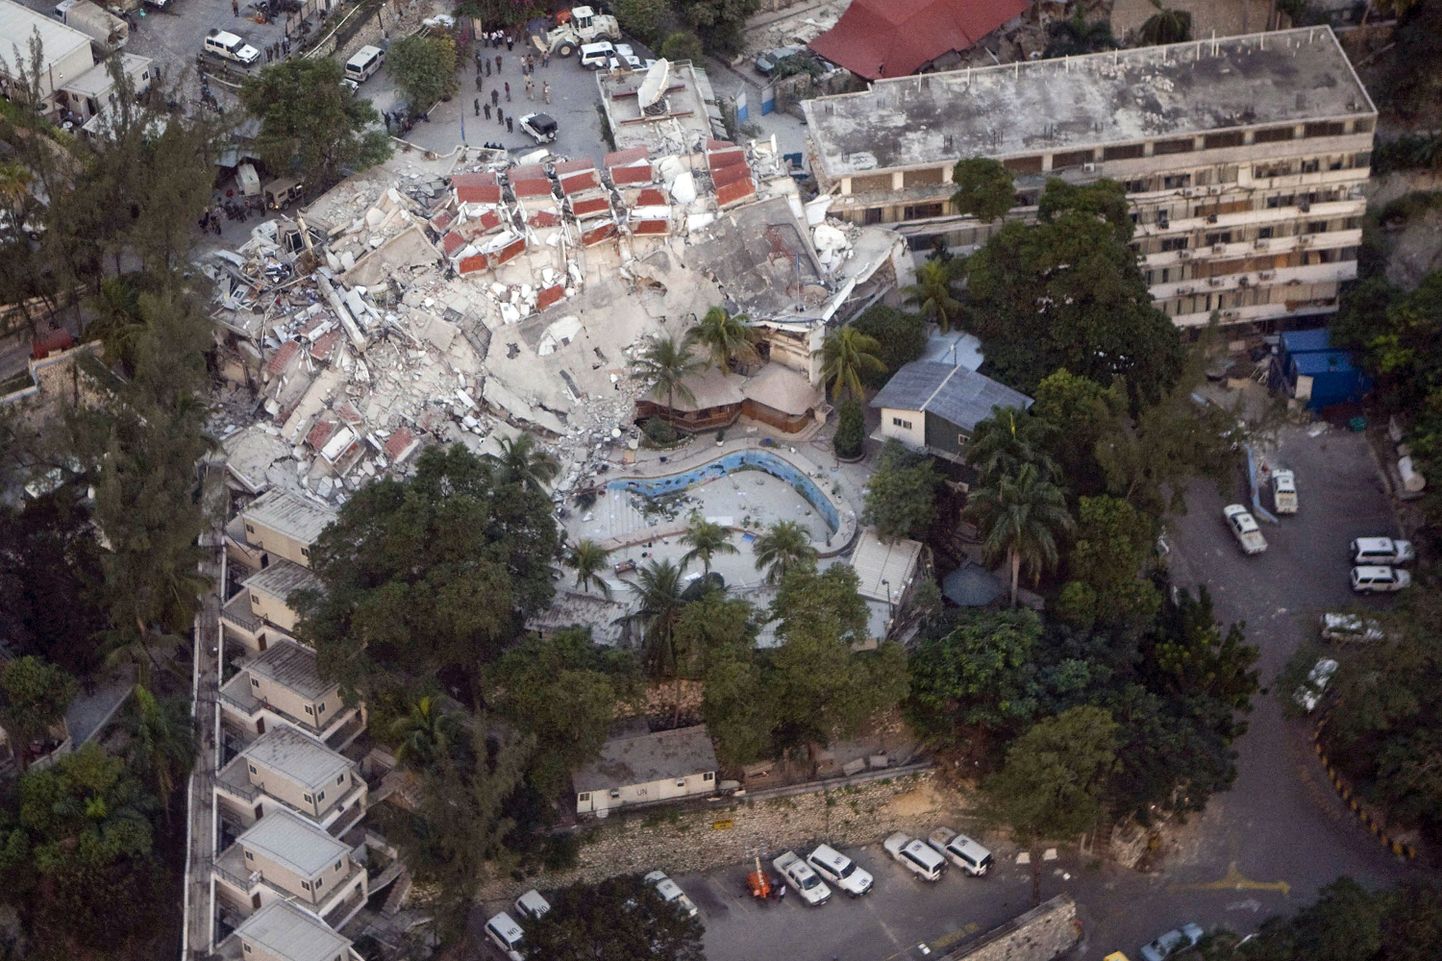 Печальные последствия землетрясения в столице Гаити - Порт-о-Пренсе.